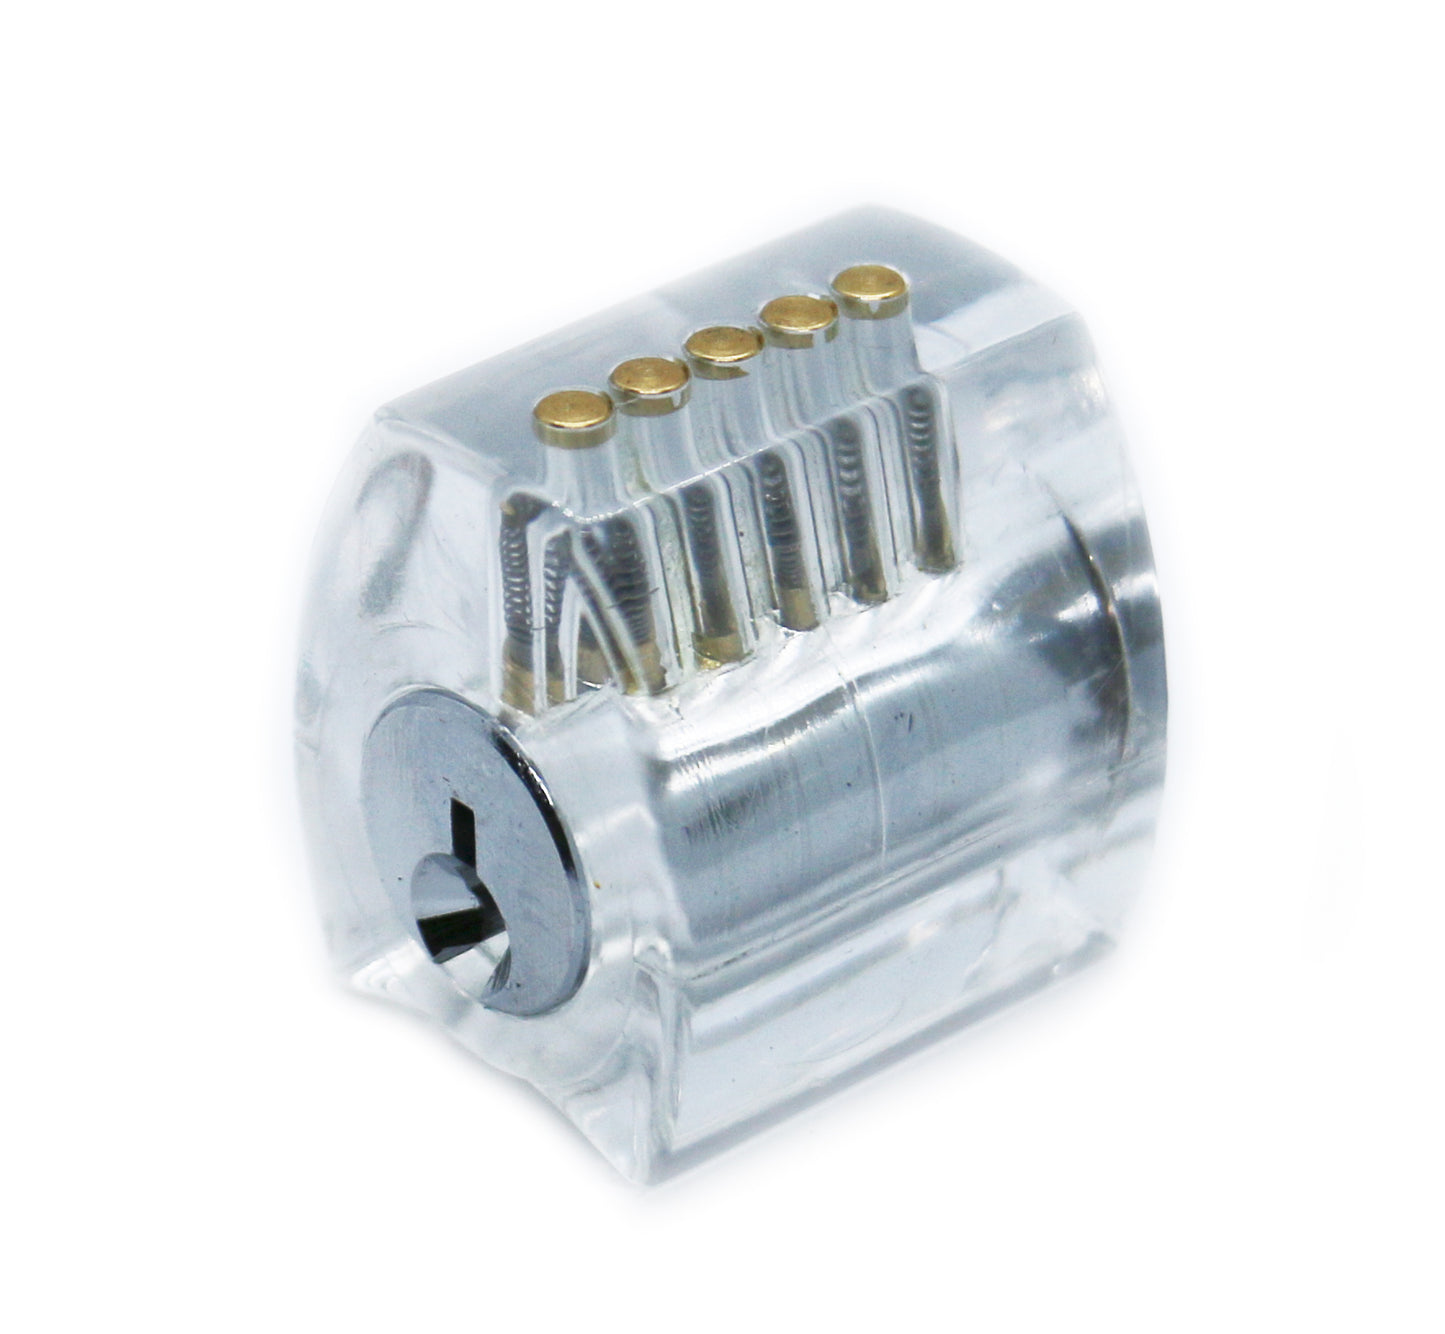 Lock Picking Training Lock Set (Standard, Serrated & Spool Pins)